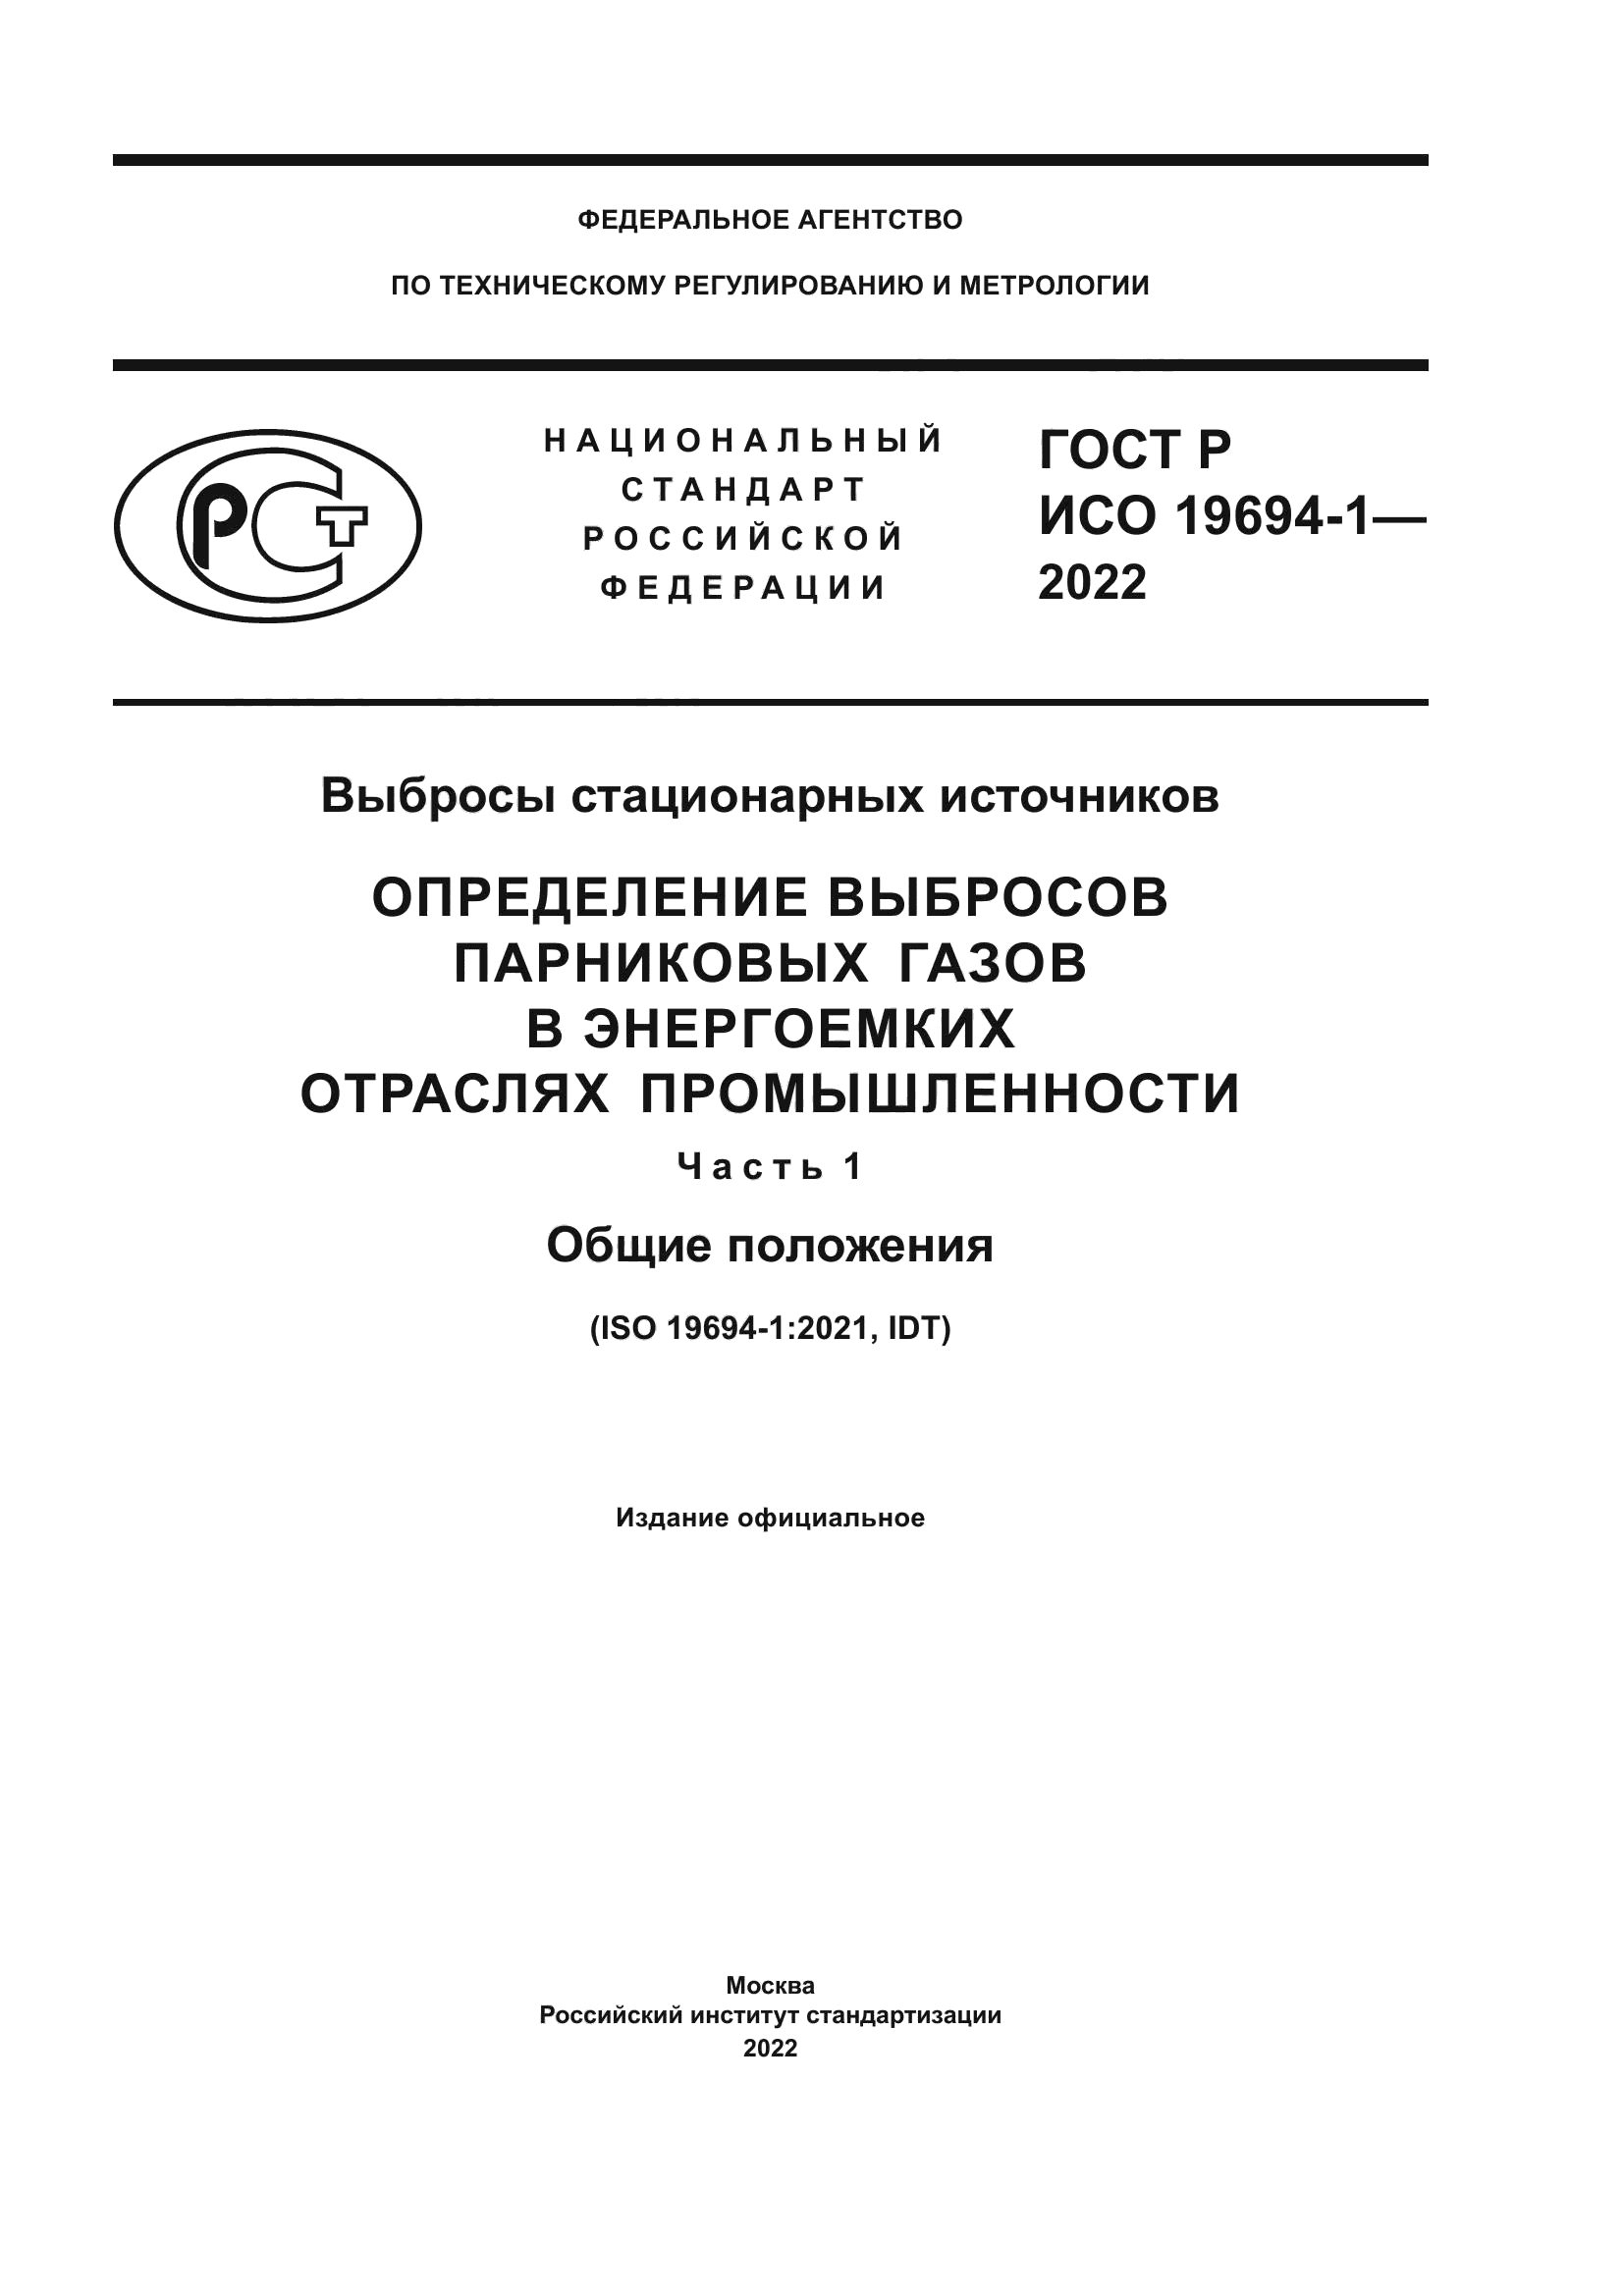 ГОСТ Р ИСО 19694-1-2022